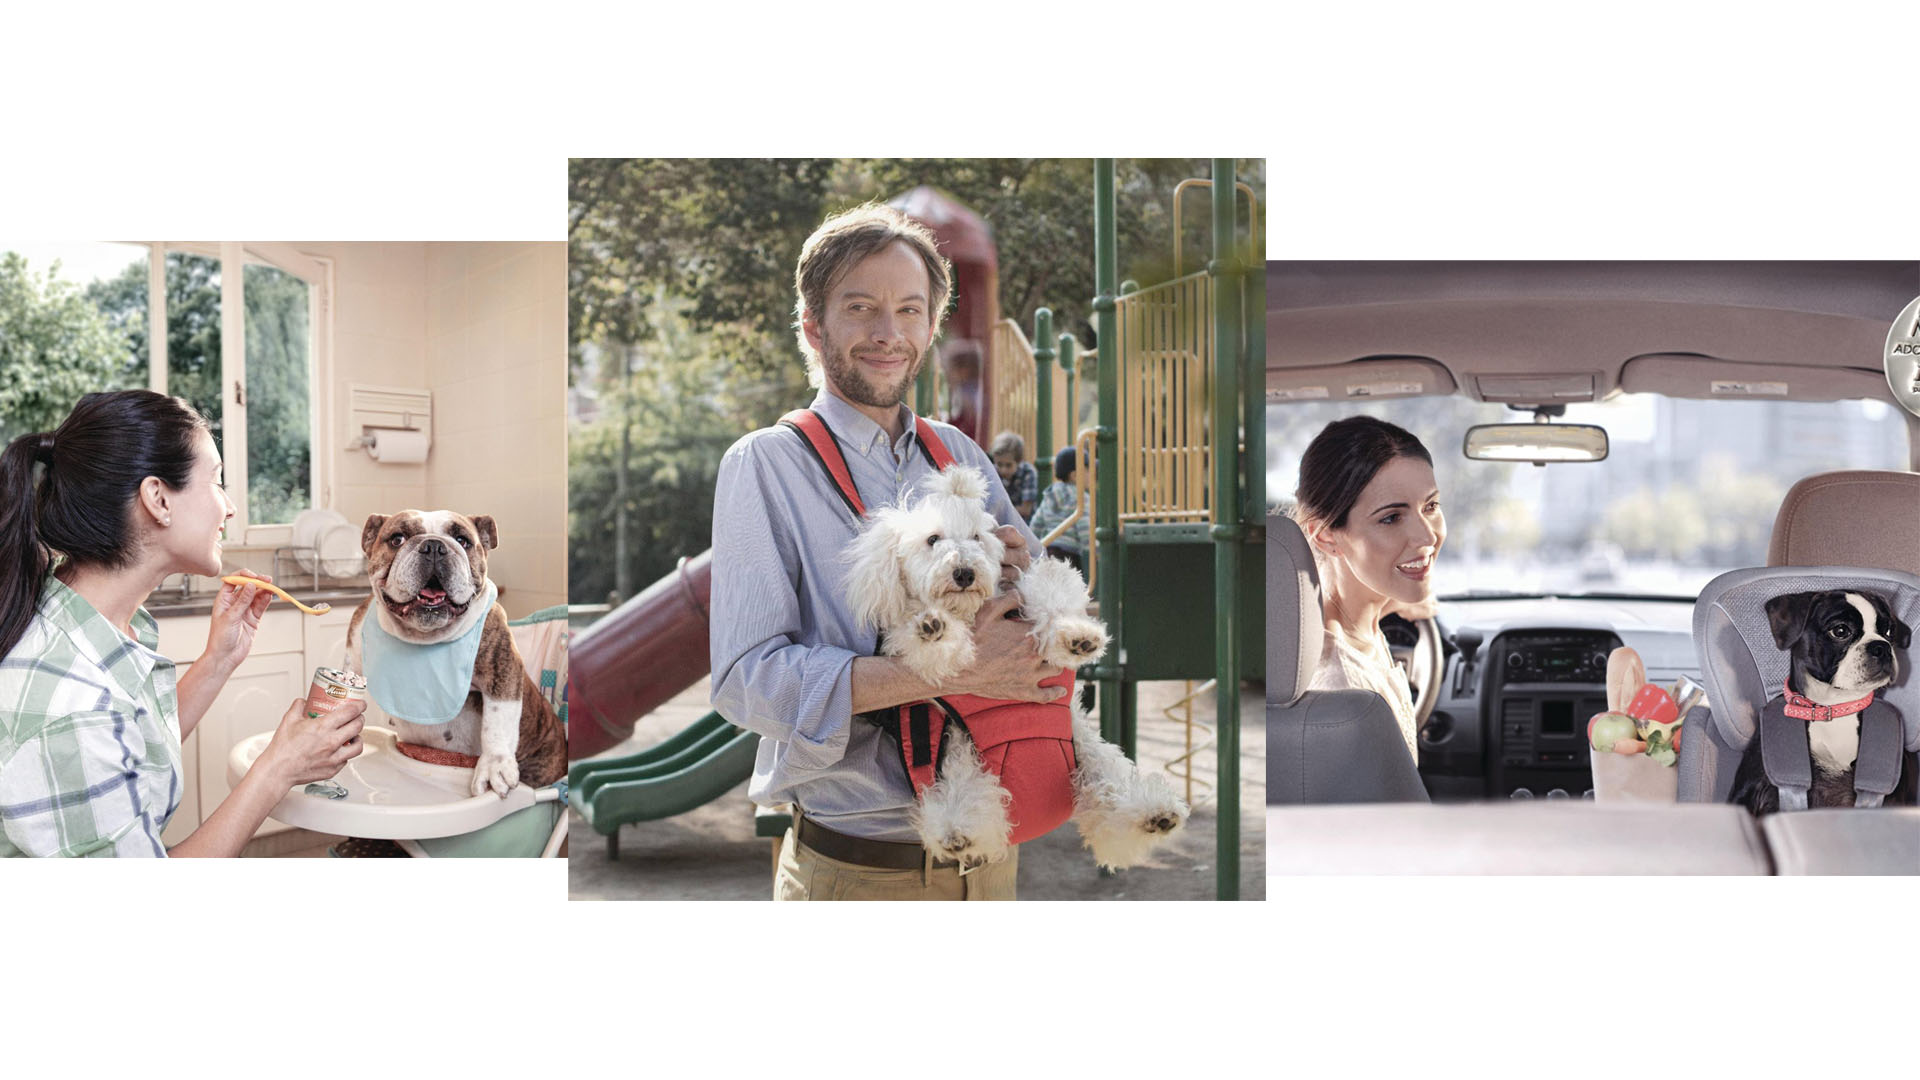 Esta campaña creada en Estados Unidos resalta el compromiso que las personas adquieren cuando tienen una mascota